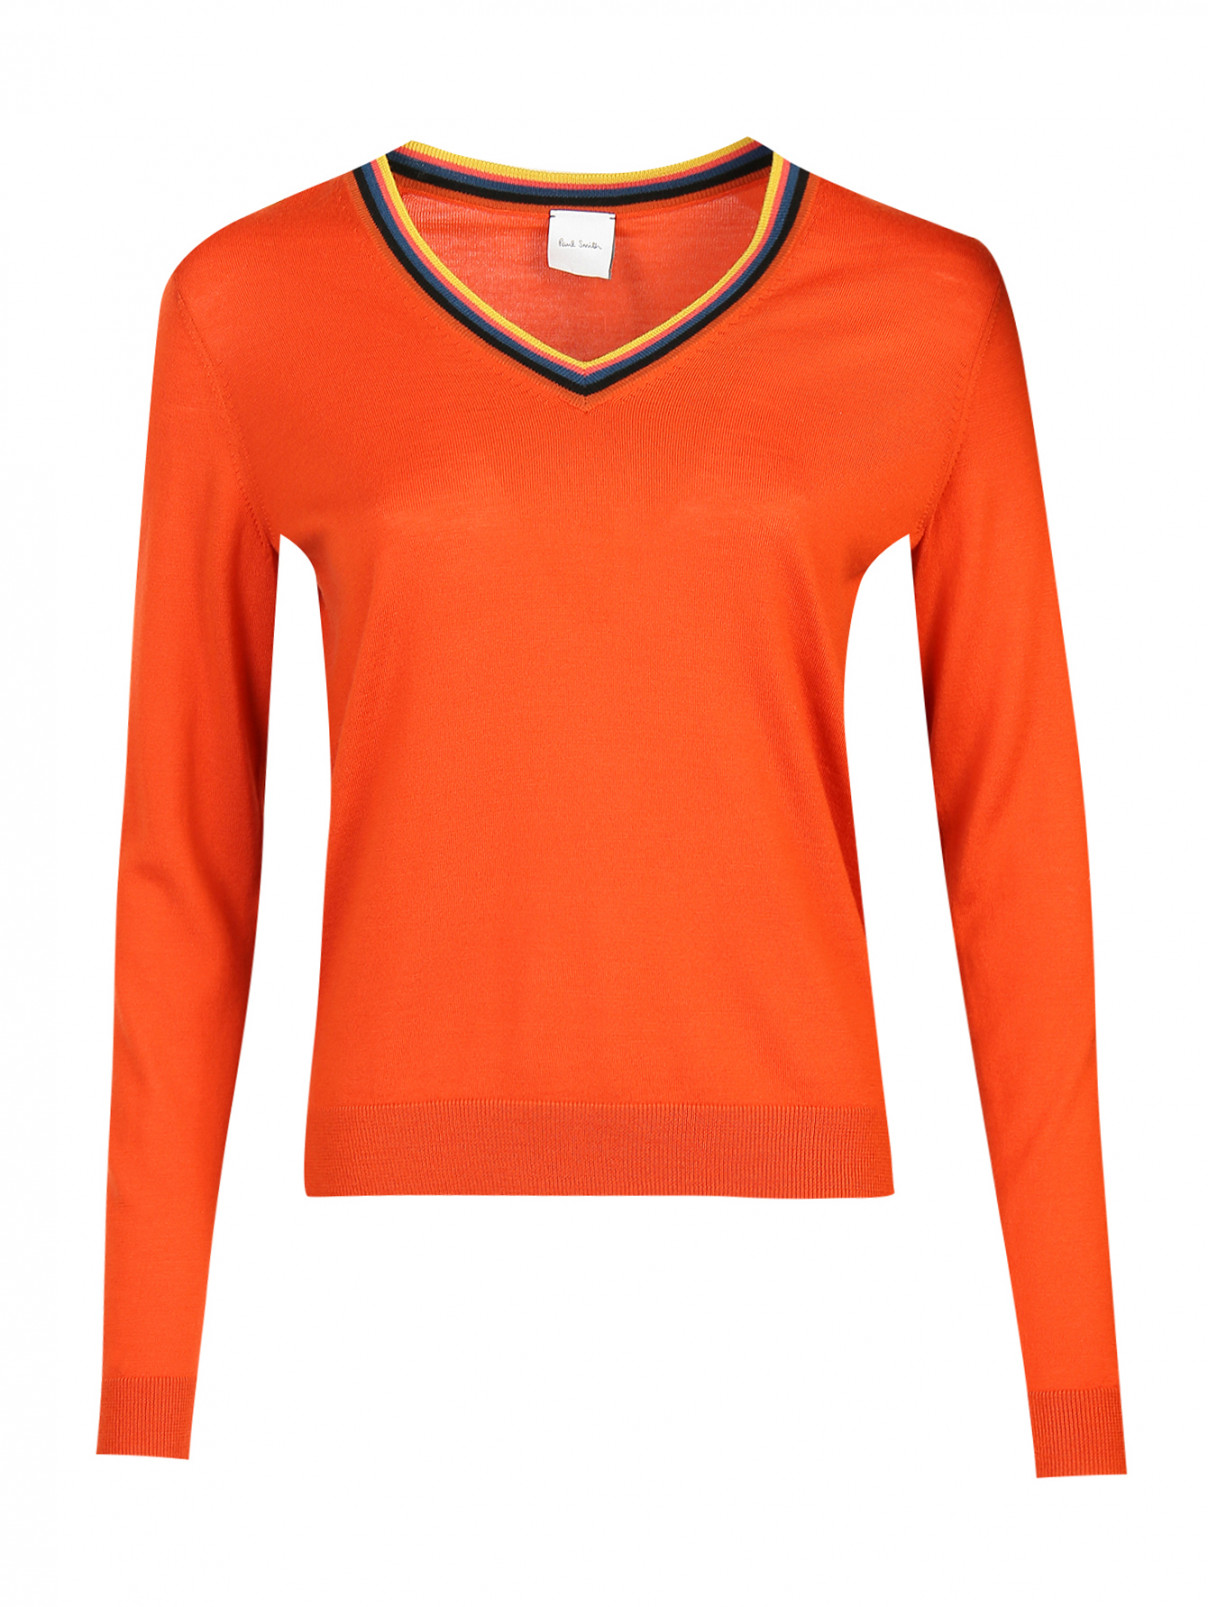 Джемпер из шерсти с V-образным вырезом Paul Smith  –  Общий вид  – Цвет:  Оранжевый